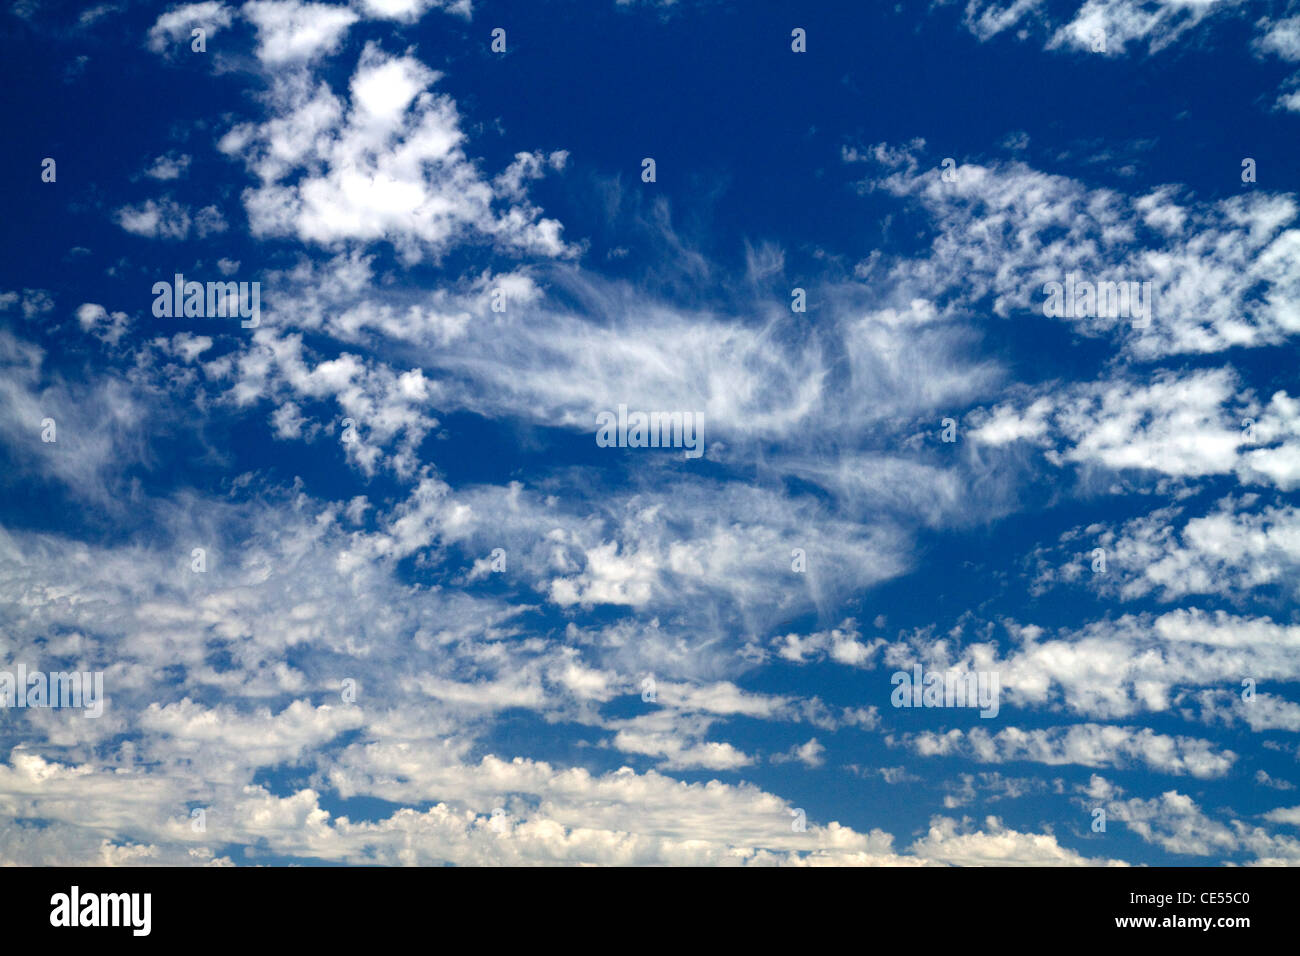 Cirruswolken am blauen Himmel. Stockfoto